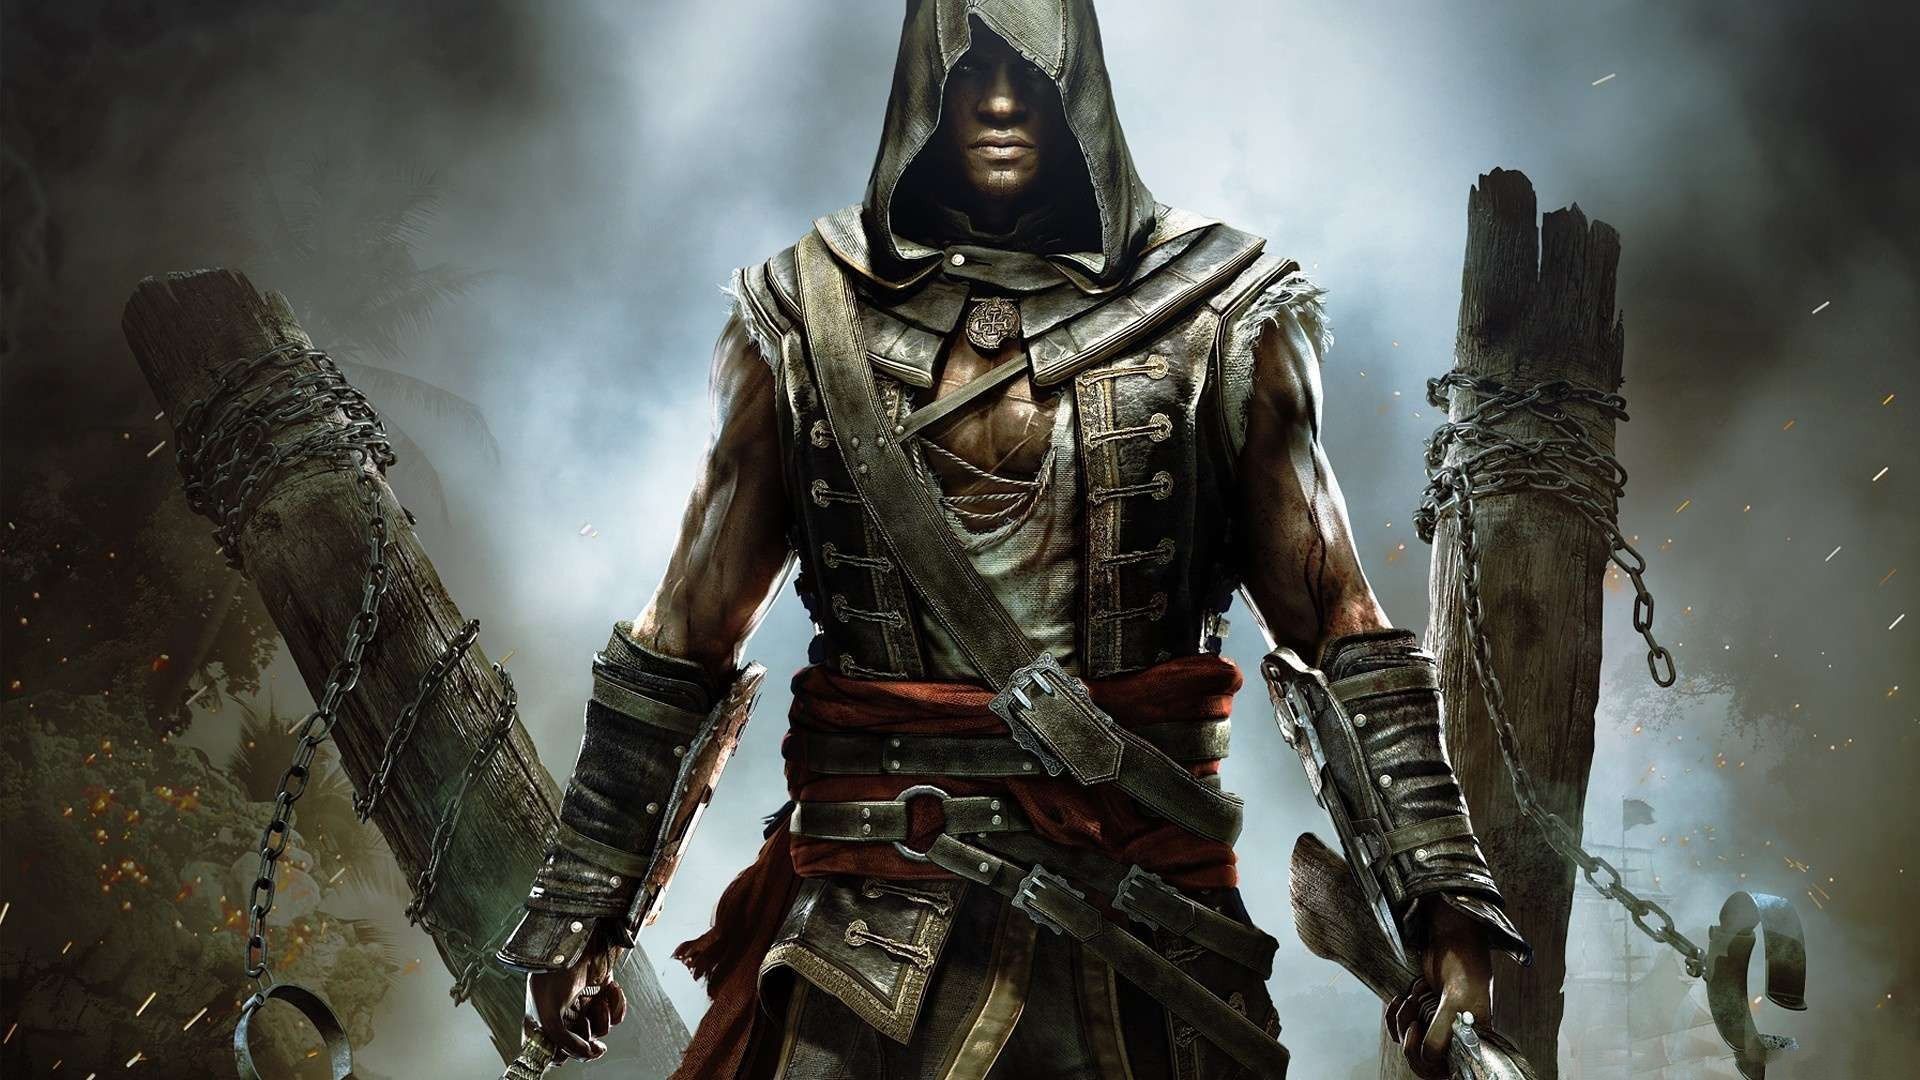 Fondos de pantalla de Assassins Creed - FondosMil